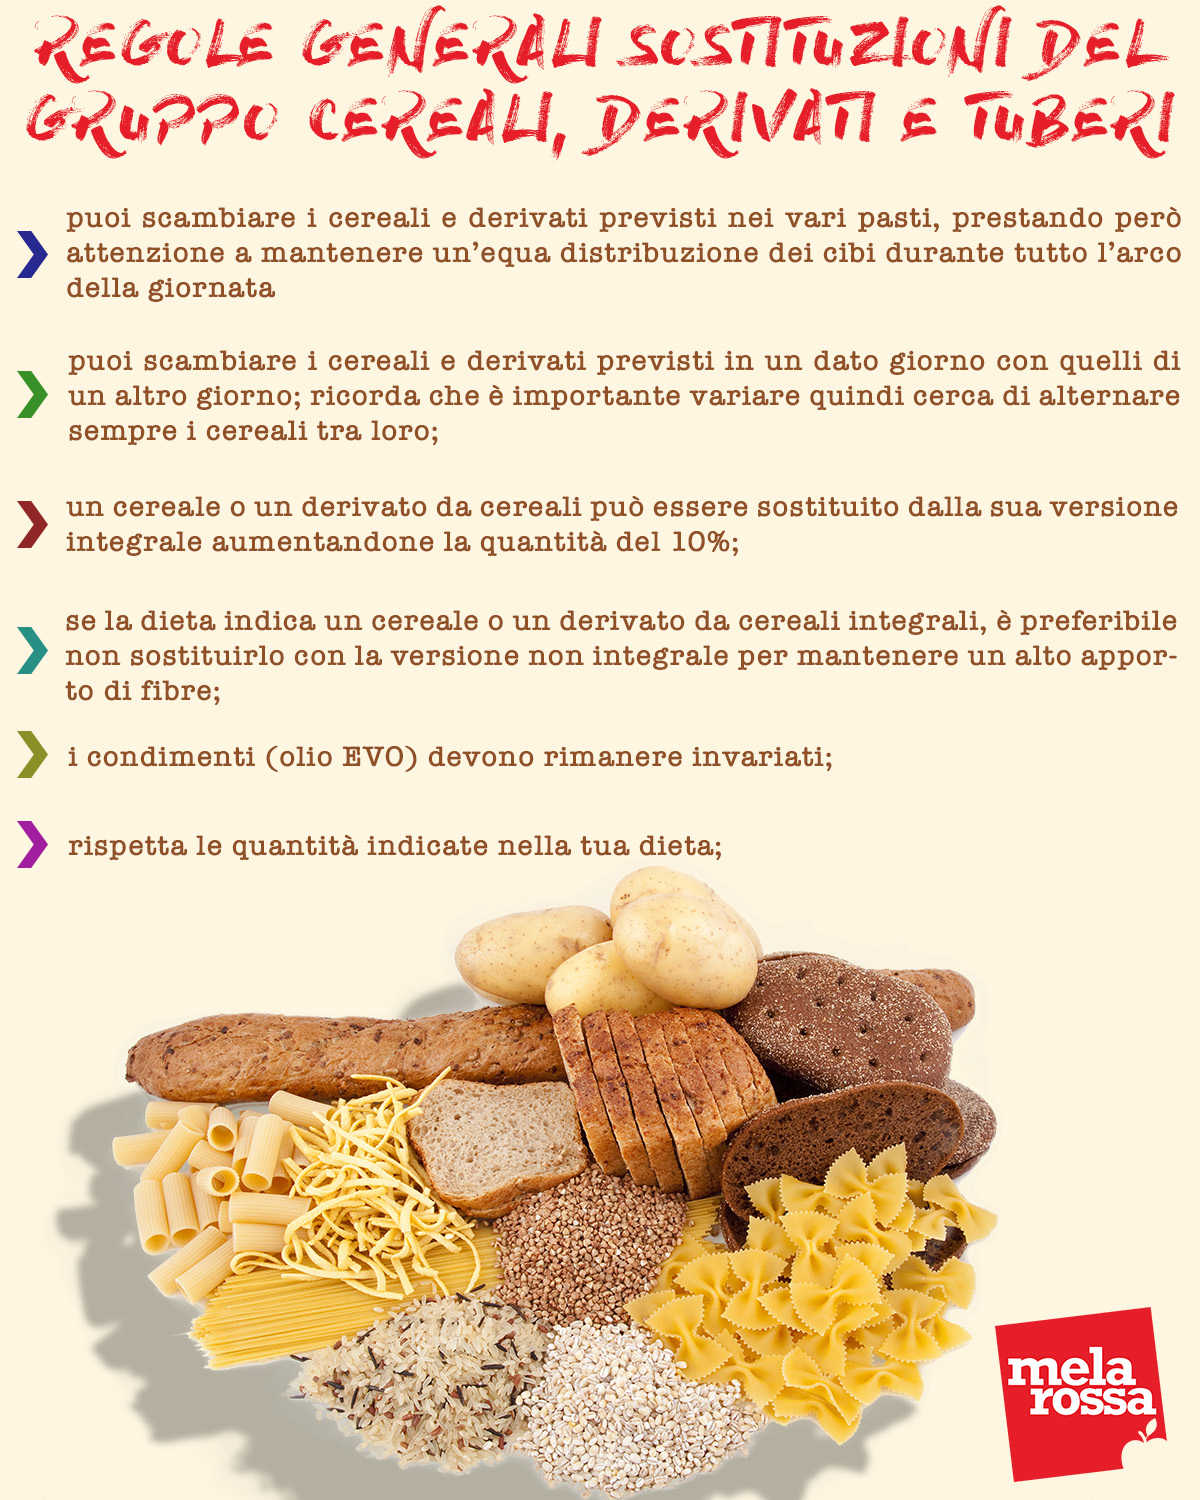 Tabella regole generali sostituzioni gruppo cereali, derivati e tuberi